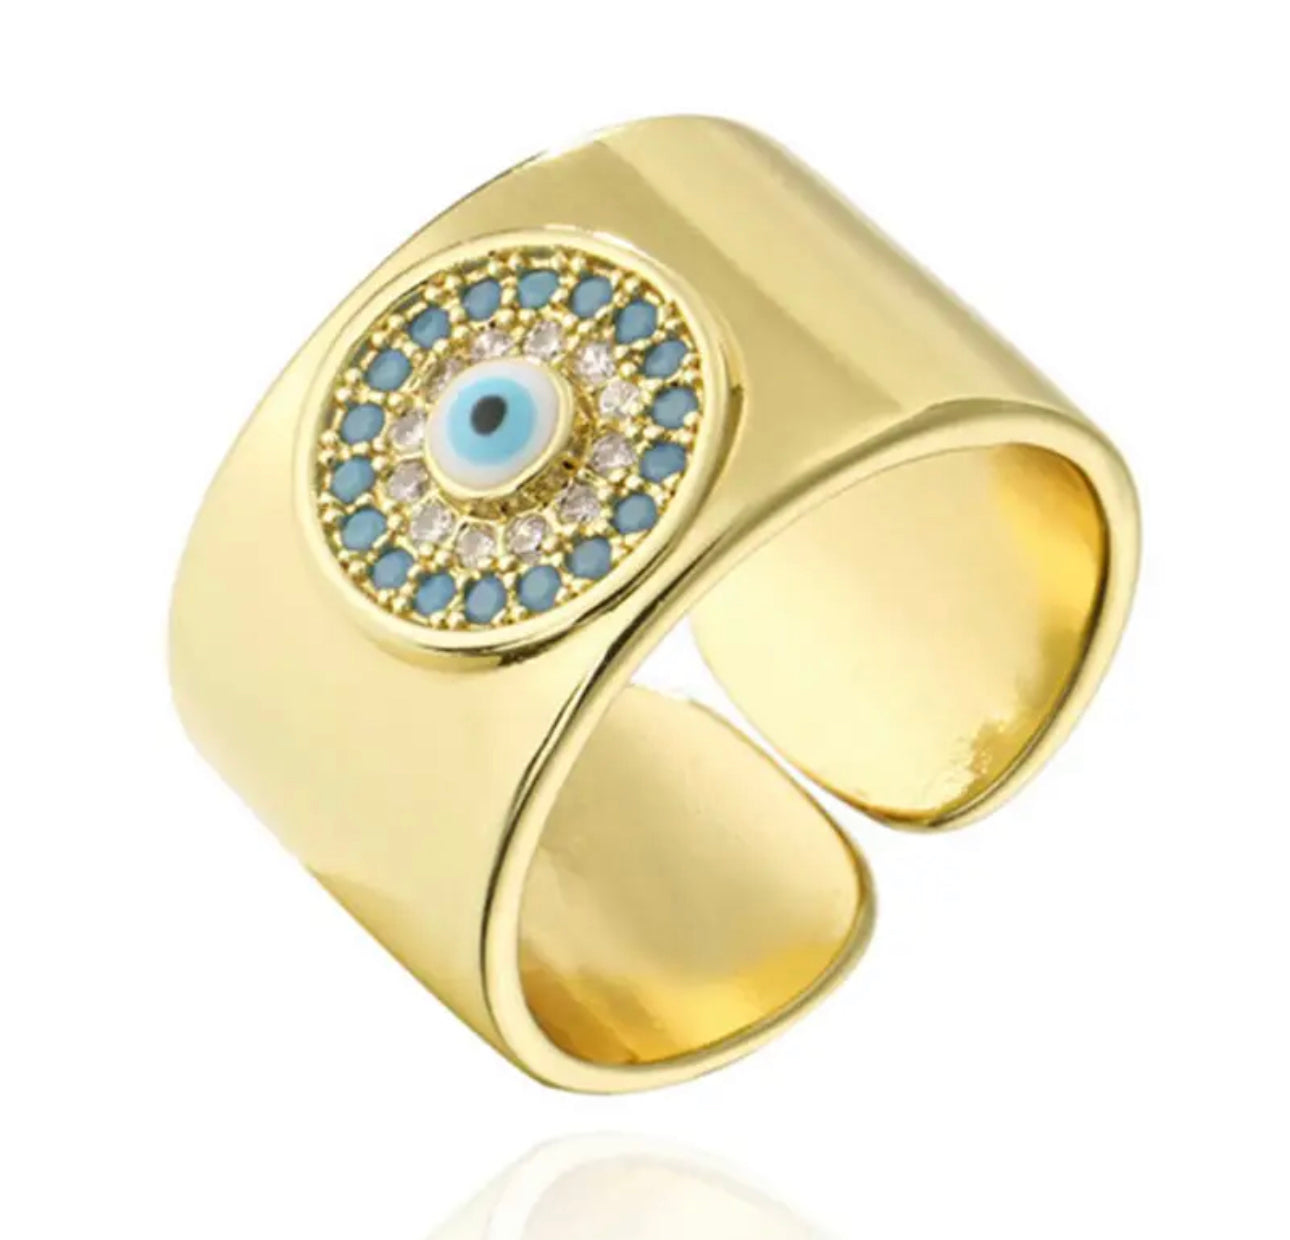 Erika Williner Designs - Evil eye cuff ring